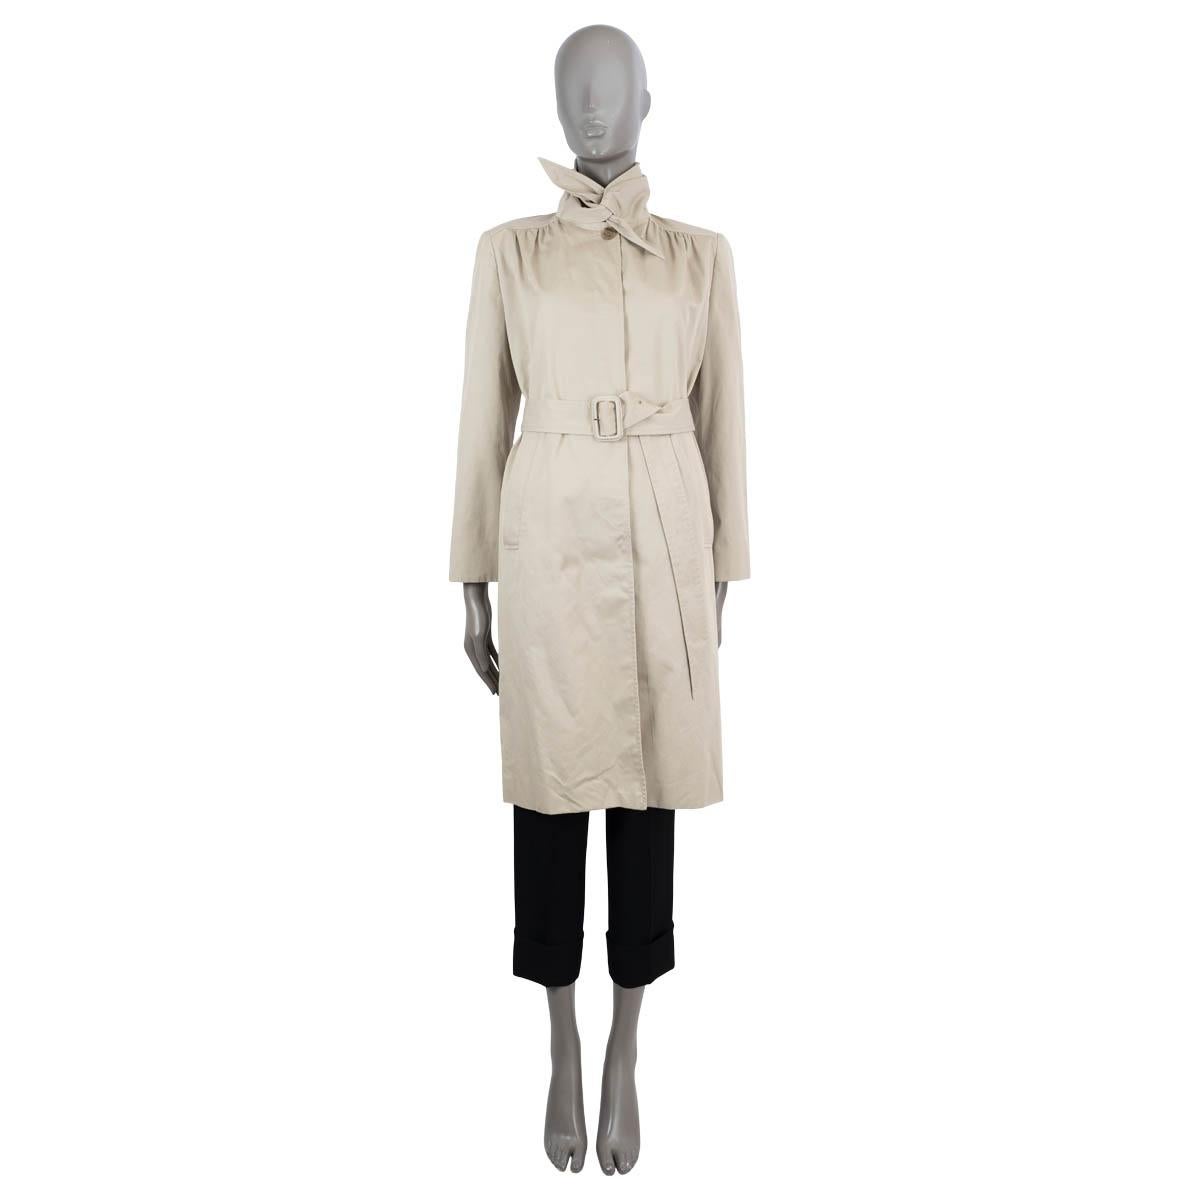 Trench-coat à foulard en coton gaberdine (100%) authentique de Balenciaga. Doté d'un col surdimensionné qui peut être noué comme un foulard, d'une ceinture assortie, de deux poches obliques et d'épaules froncées. Se ferme par des boutons dissimulés